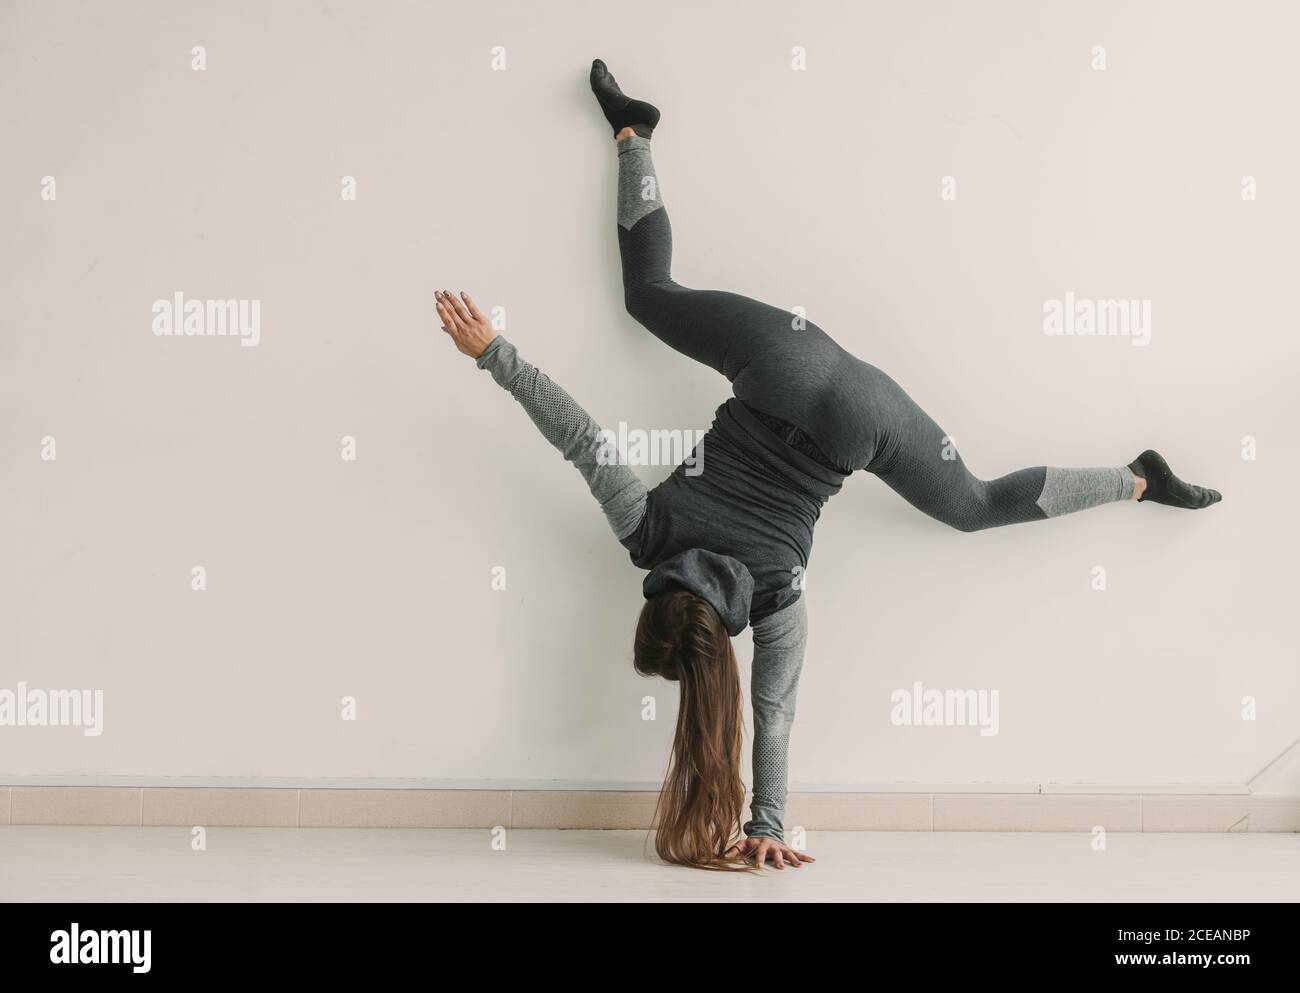 Rückansicht einer jungen sportlichen Frau, die im hellen Raum Handstand und Bein gespalten macht Stockfoto